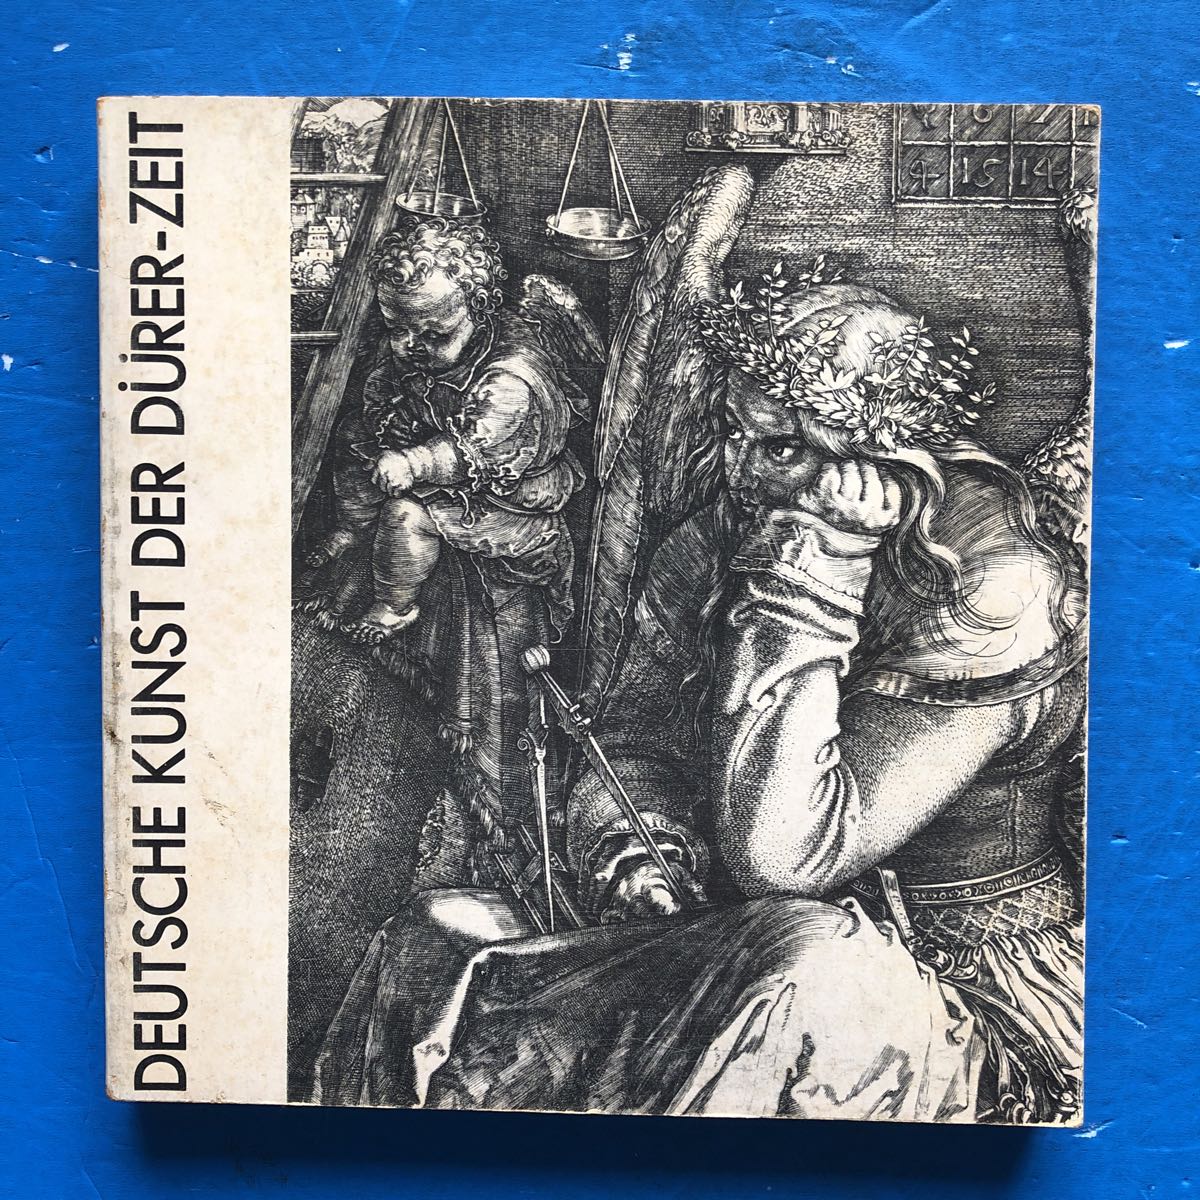 展览目录丢勒与德国文艺复兴展览 1972, 绘画, 画集, 美术书, 作品集, 图解目录